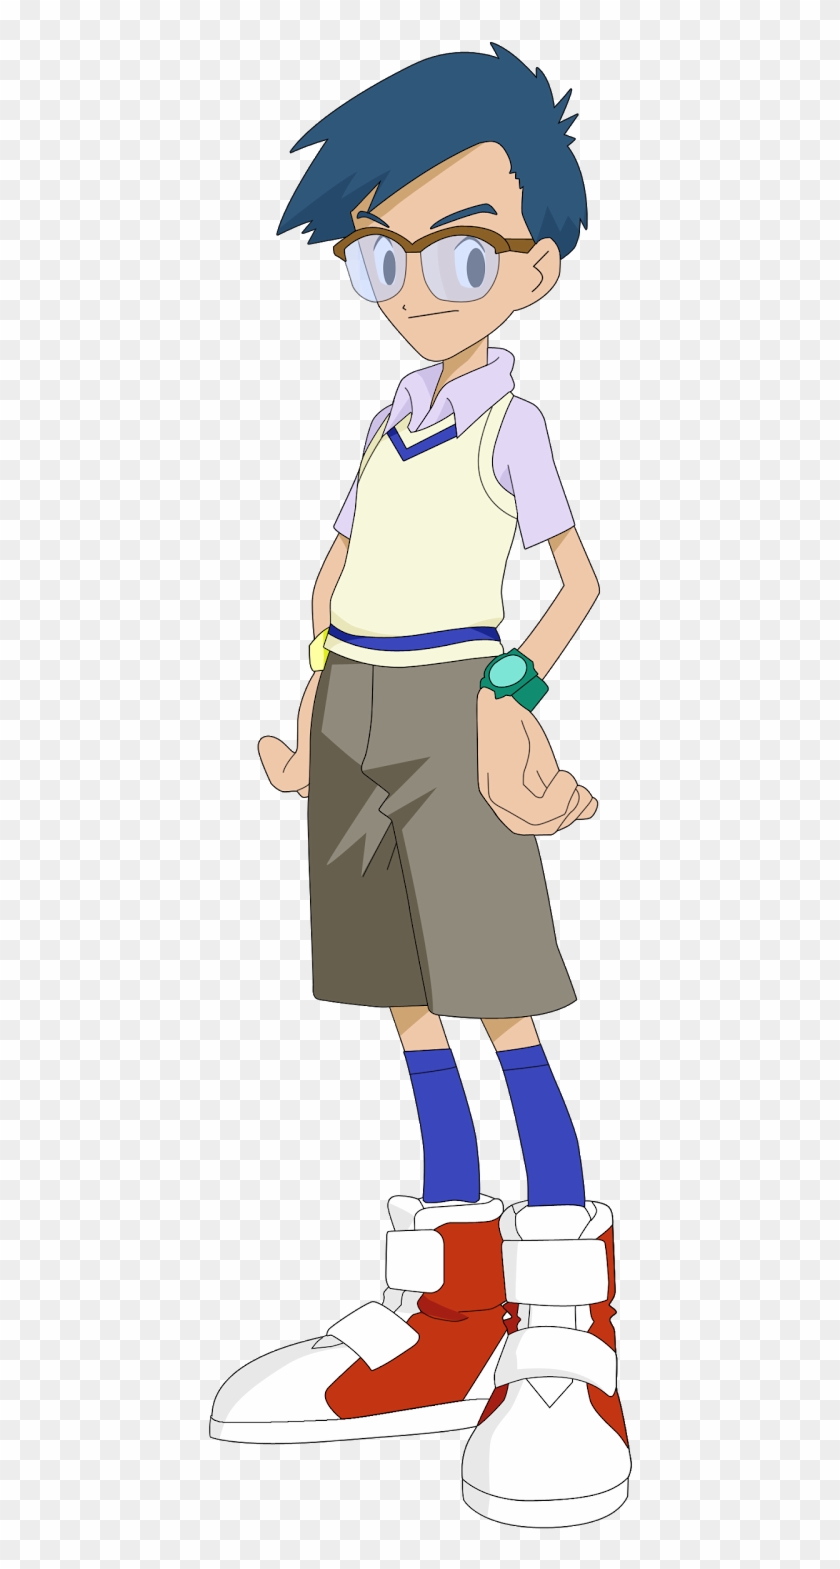 Digimon Season 1 Characters - Joe Kido #418183